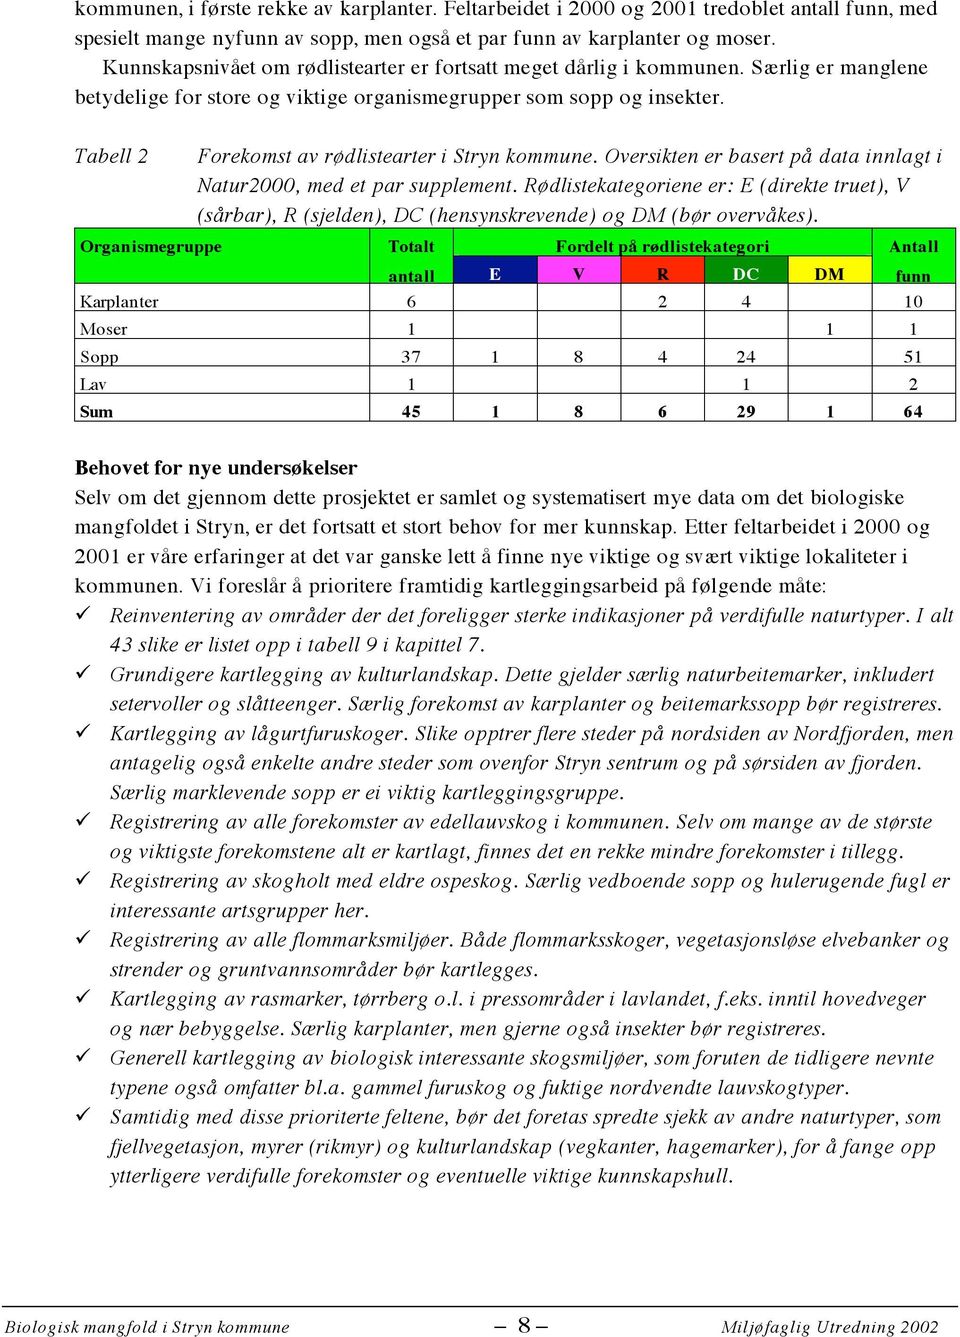 Tabell 2 Organismegruppe Forekomst av rødlistearter i Stryn kommune. Oversikten er basert på data innlagt i Natur2000, med et par supplement.